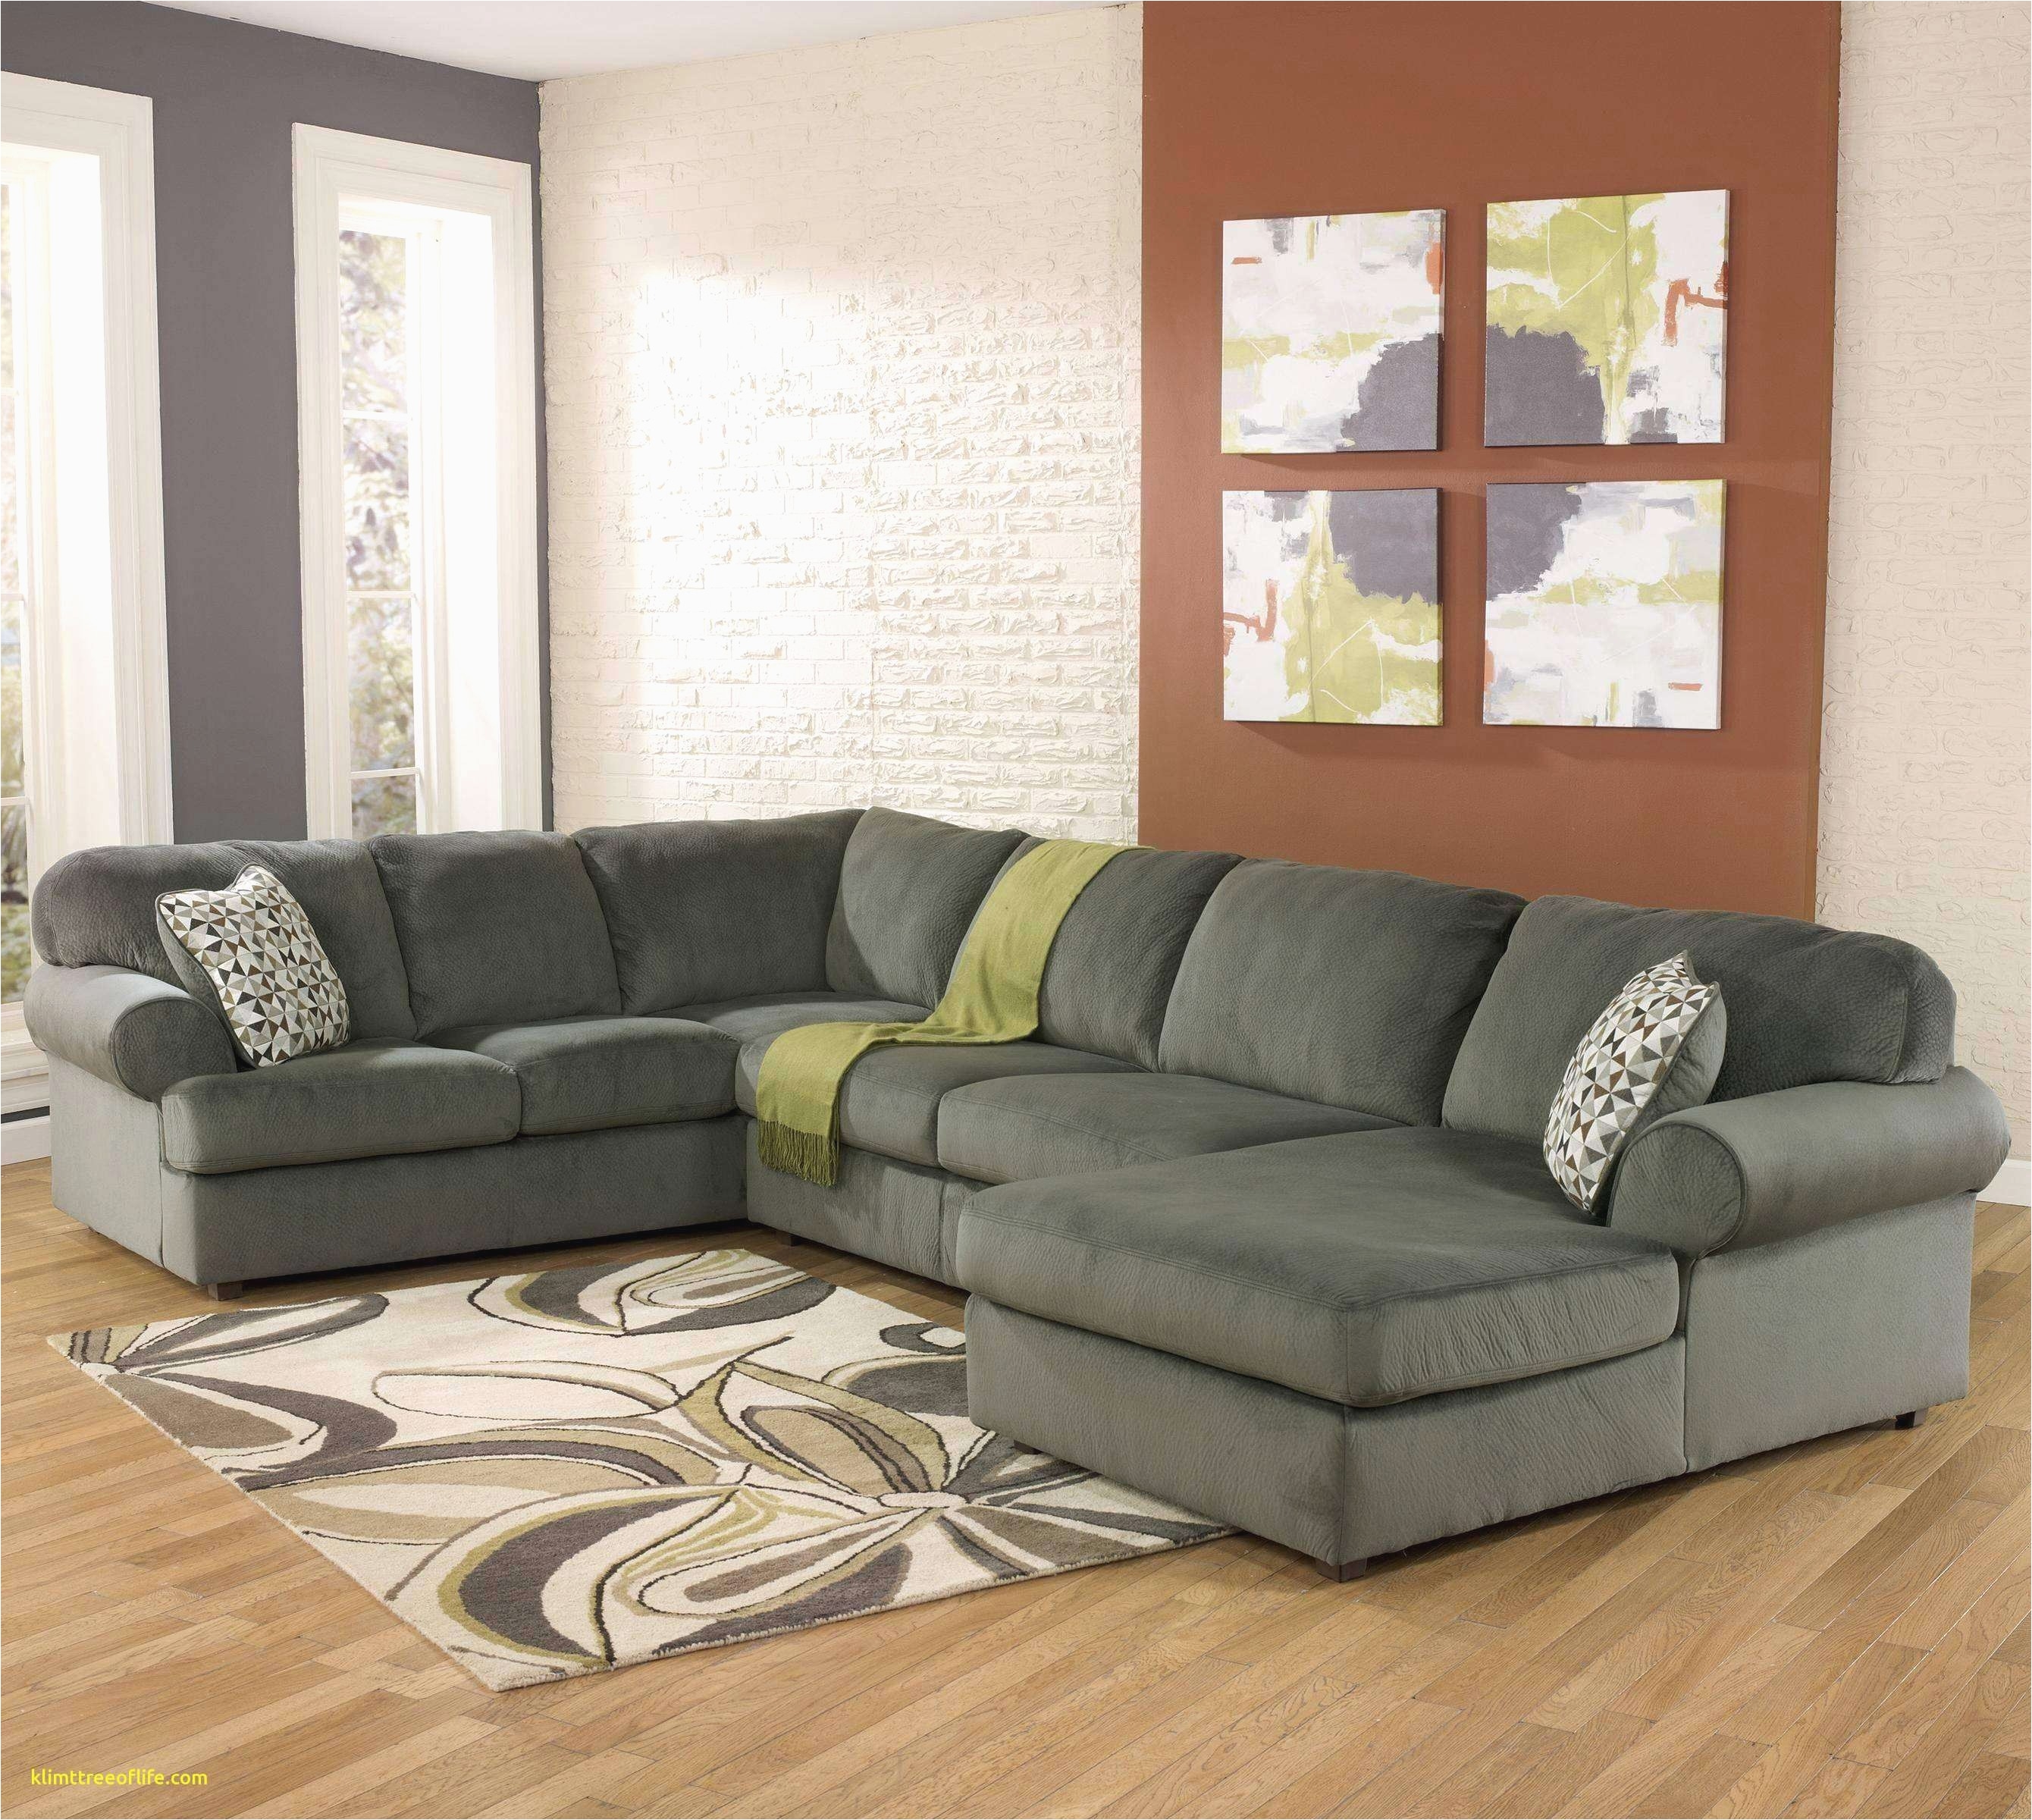 modern sleeper sofa inspirational macys furniture sleeper sofa new gunstige sofa macys furniture 0d